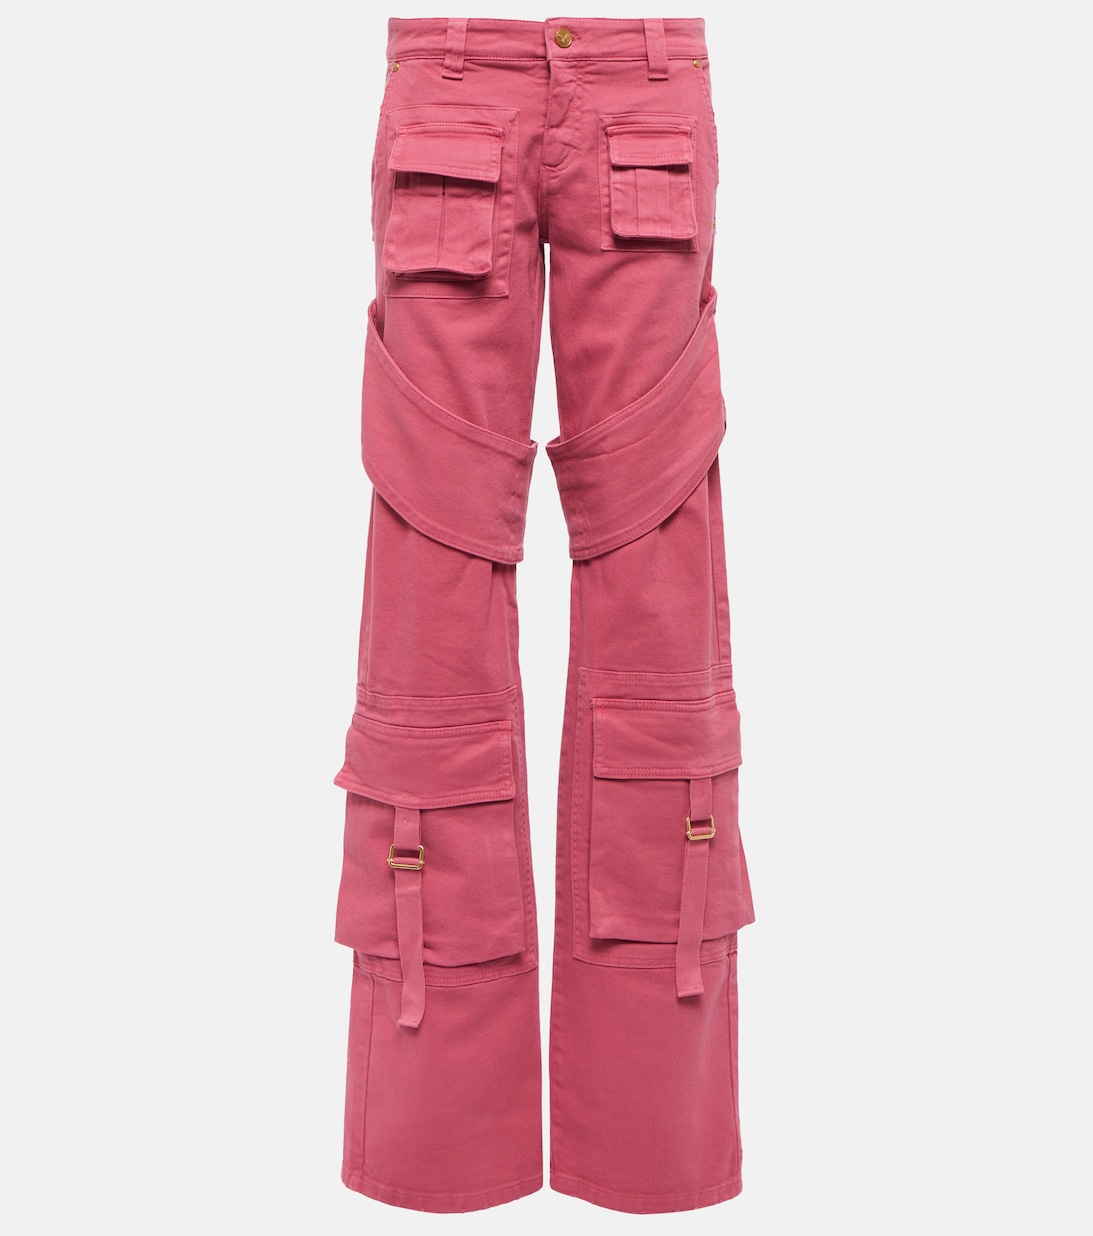 Джинсовые брюки карго BLUMARINE, розовый джинсовые брюки карго с низкой посадкой blumarine черный